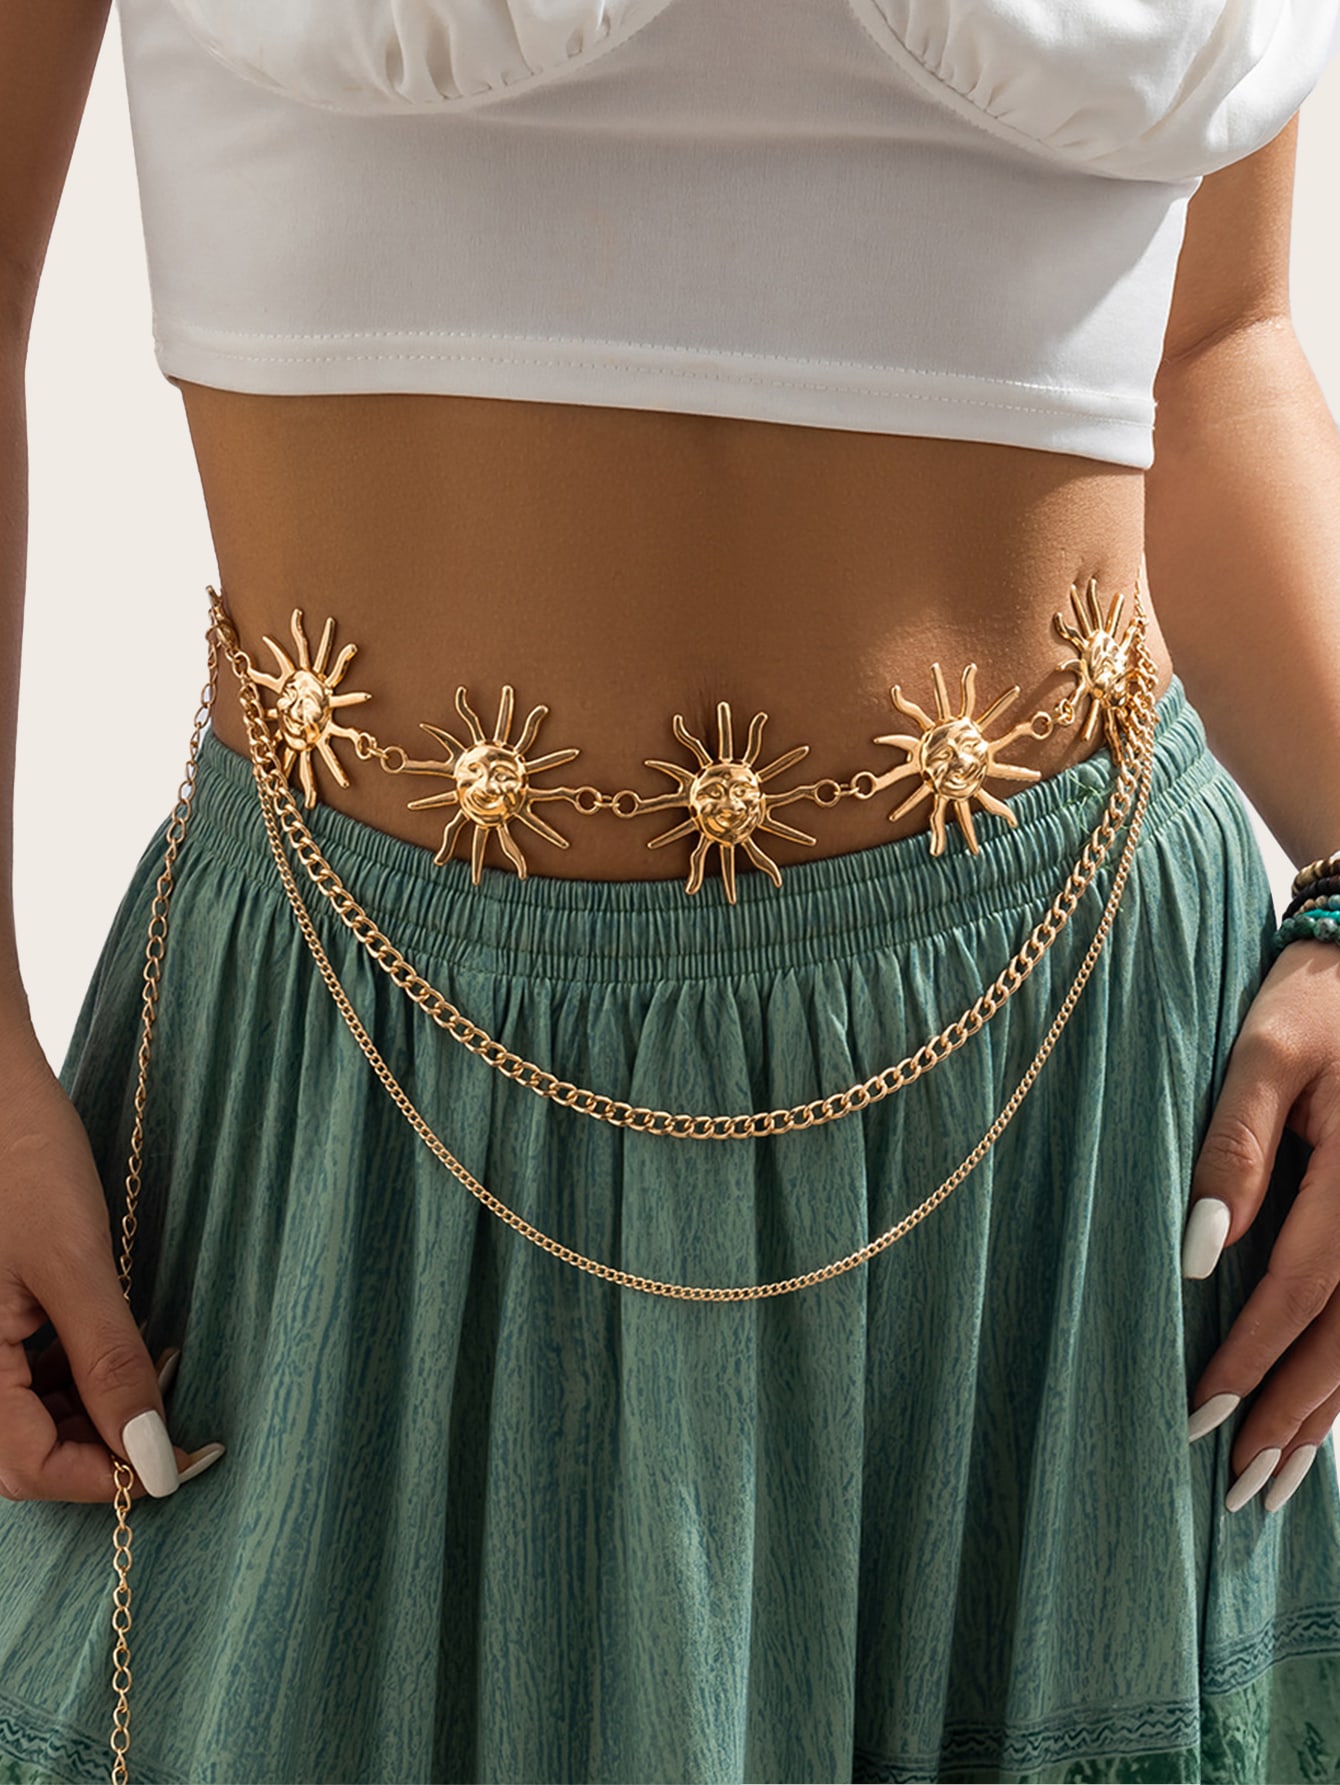 1 шт. модный западный женский солнцезащитный декор многослойный винтажный пояс-цепочка для украшения платья или джинсовых брюк, золото